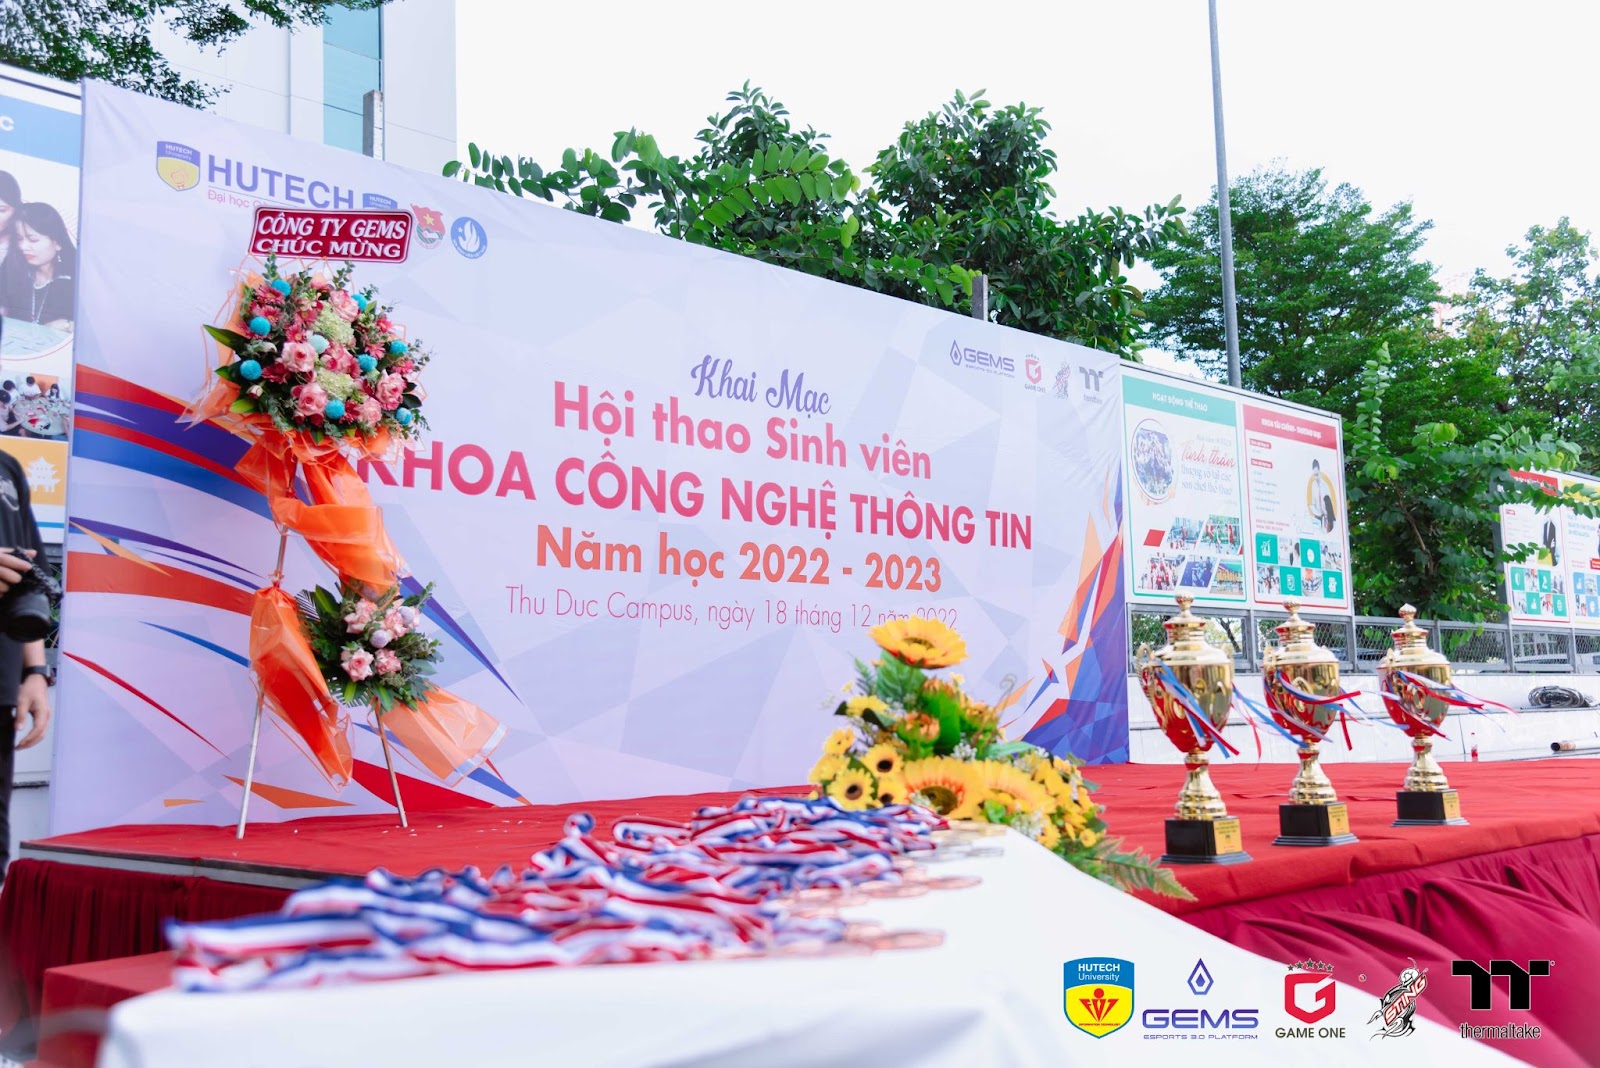 LỄ KHAI MẠC HỘI THAO KHOA CÔNG NGHỆ THÔNG TIN - IT HUTECH CHAMPIONSHIP 2022 291